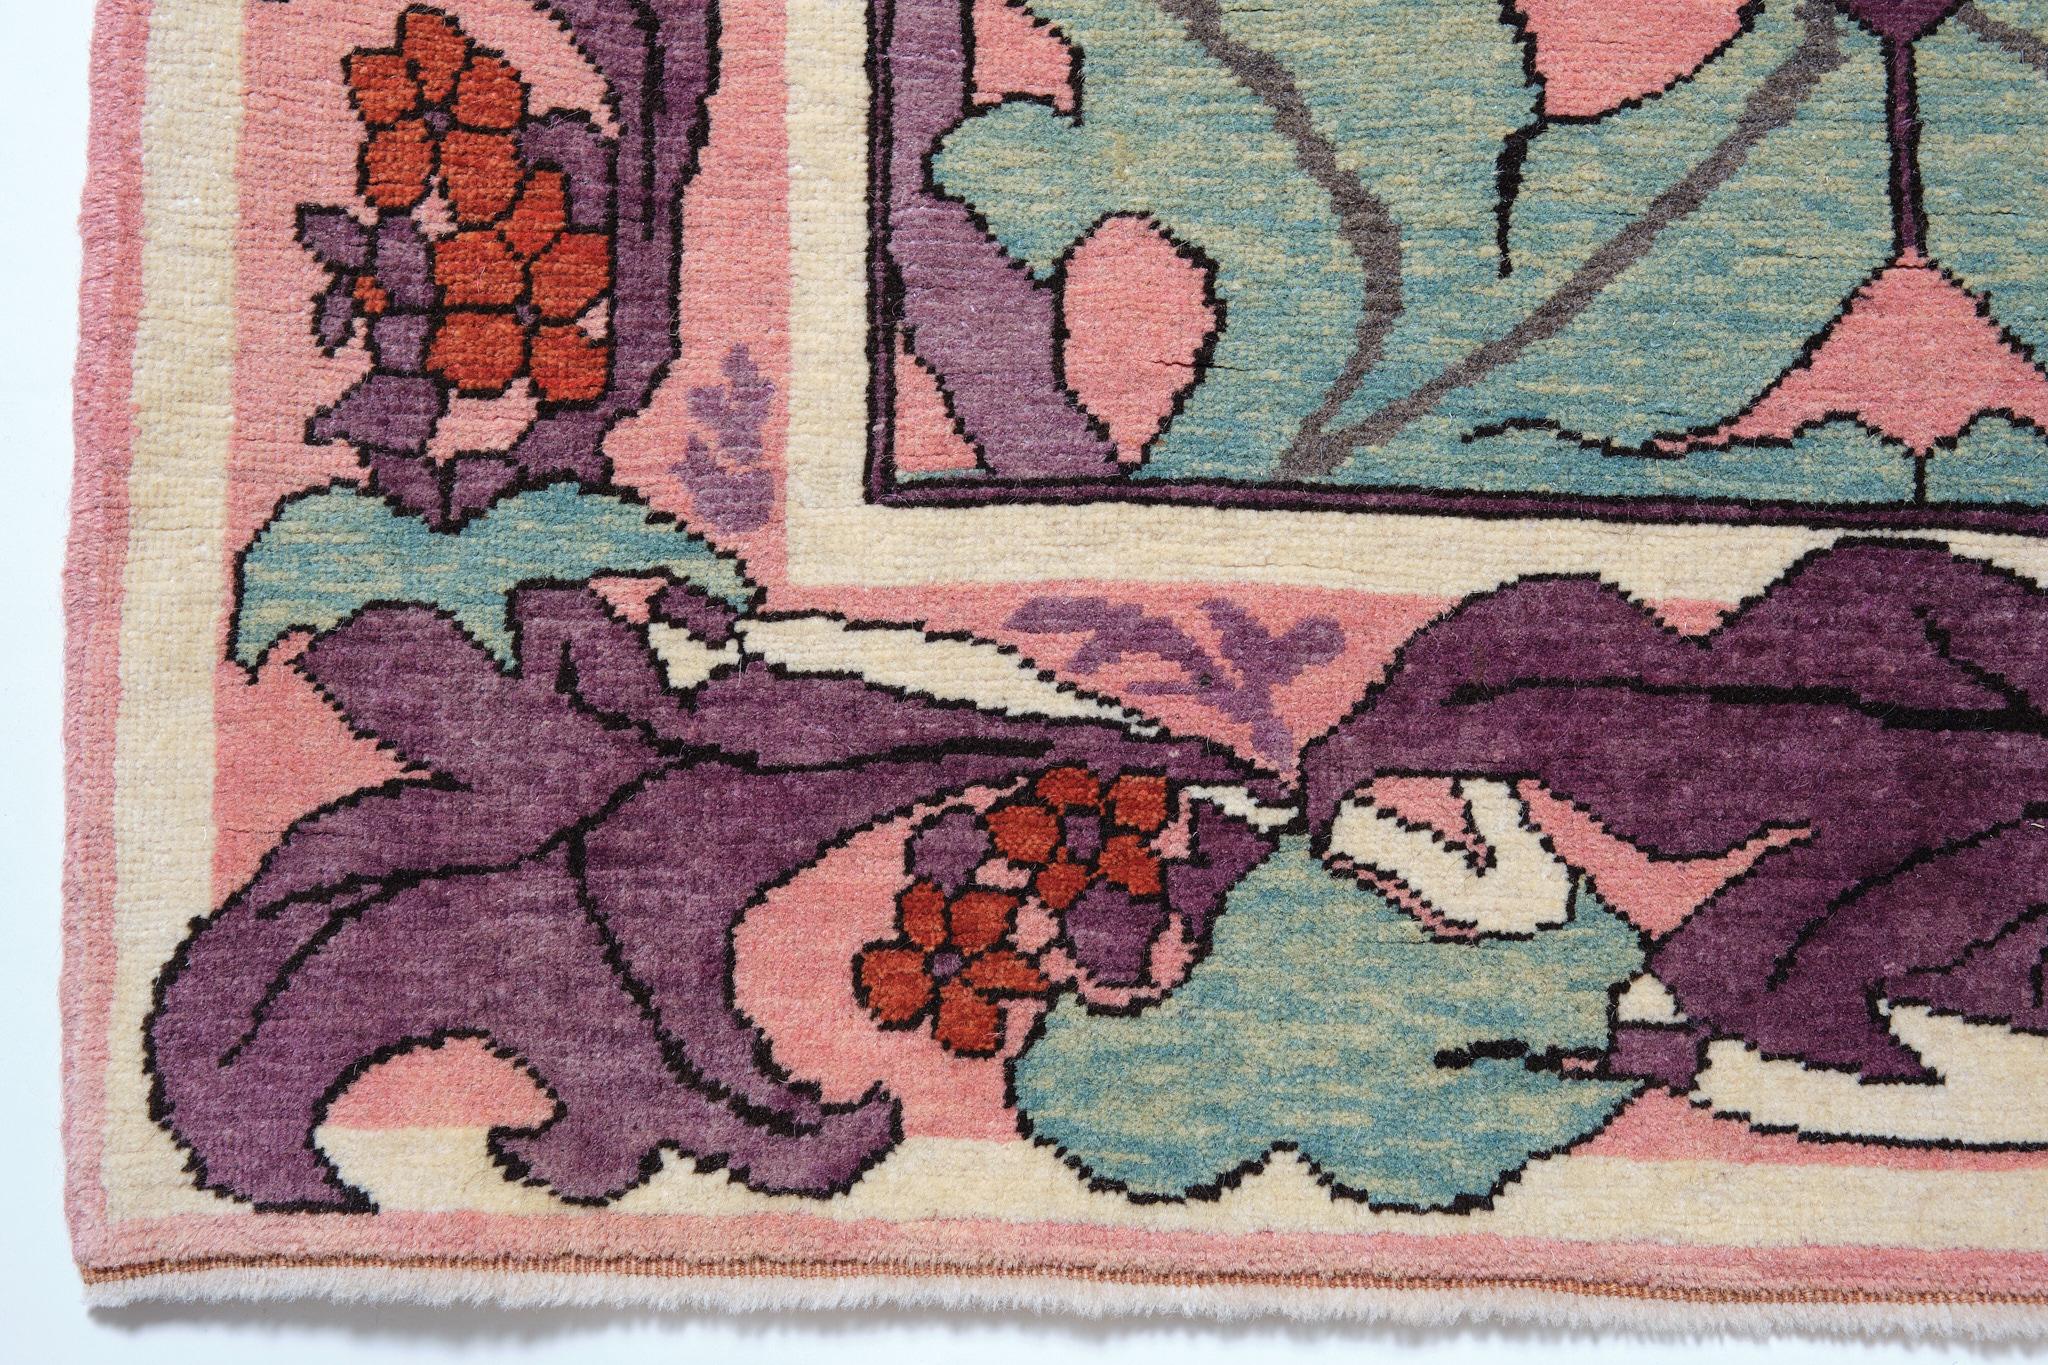 Die Quelle des Teppichs stammt aus dem Buch Arts & Crafts Carpets, von Malcolm Haslam und David Black, 1991, Abb.55. Dieser Donegal-Teppich wurde möglicherweise vom Silver Studio für Liberty's entworfen, ca. 1902, Vereinigtes Königreich. Im Jahr